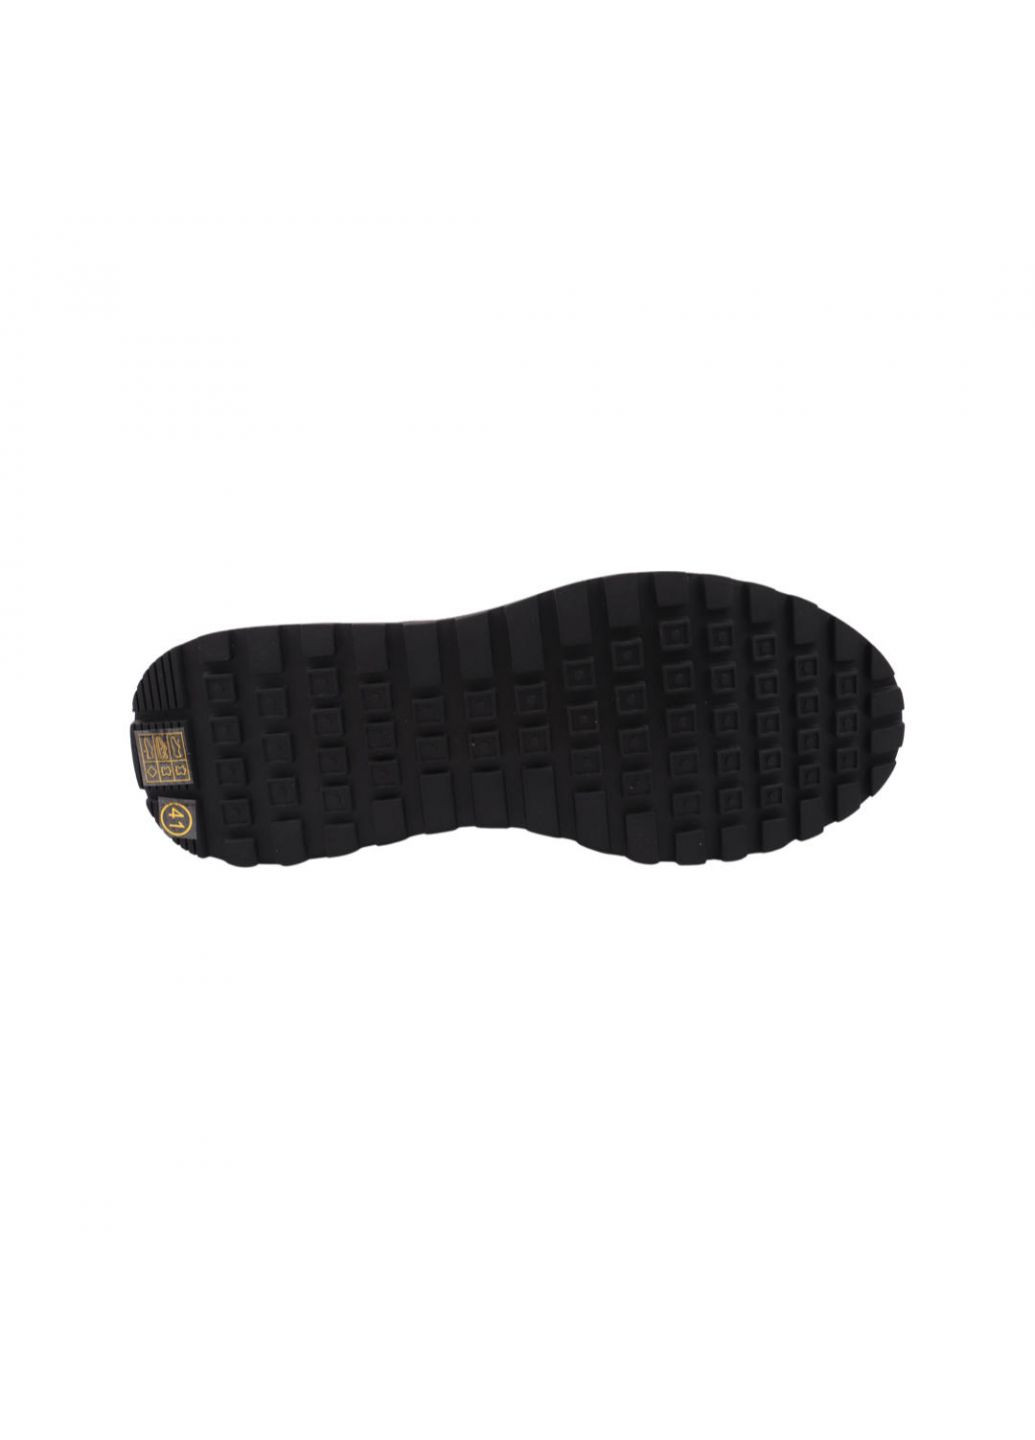 Черные кроссовки мужские черные натуральная кожа Lifexpert 1086-22/23DTC